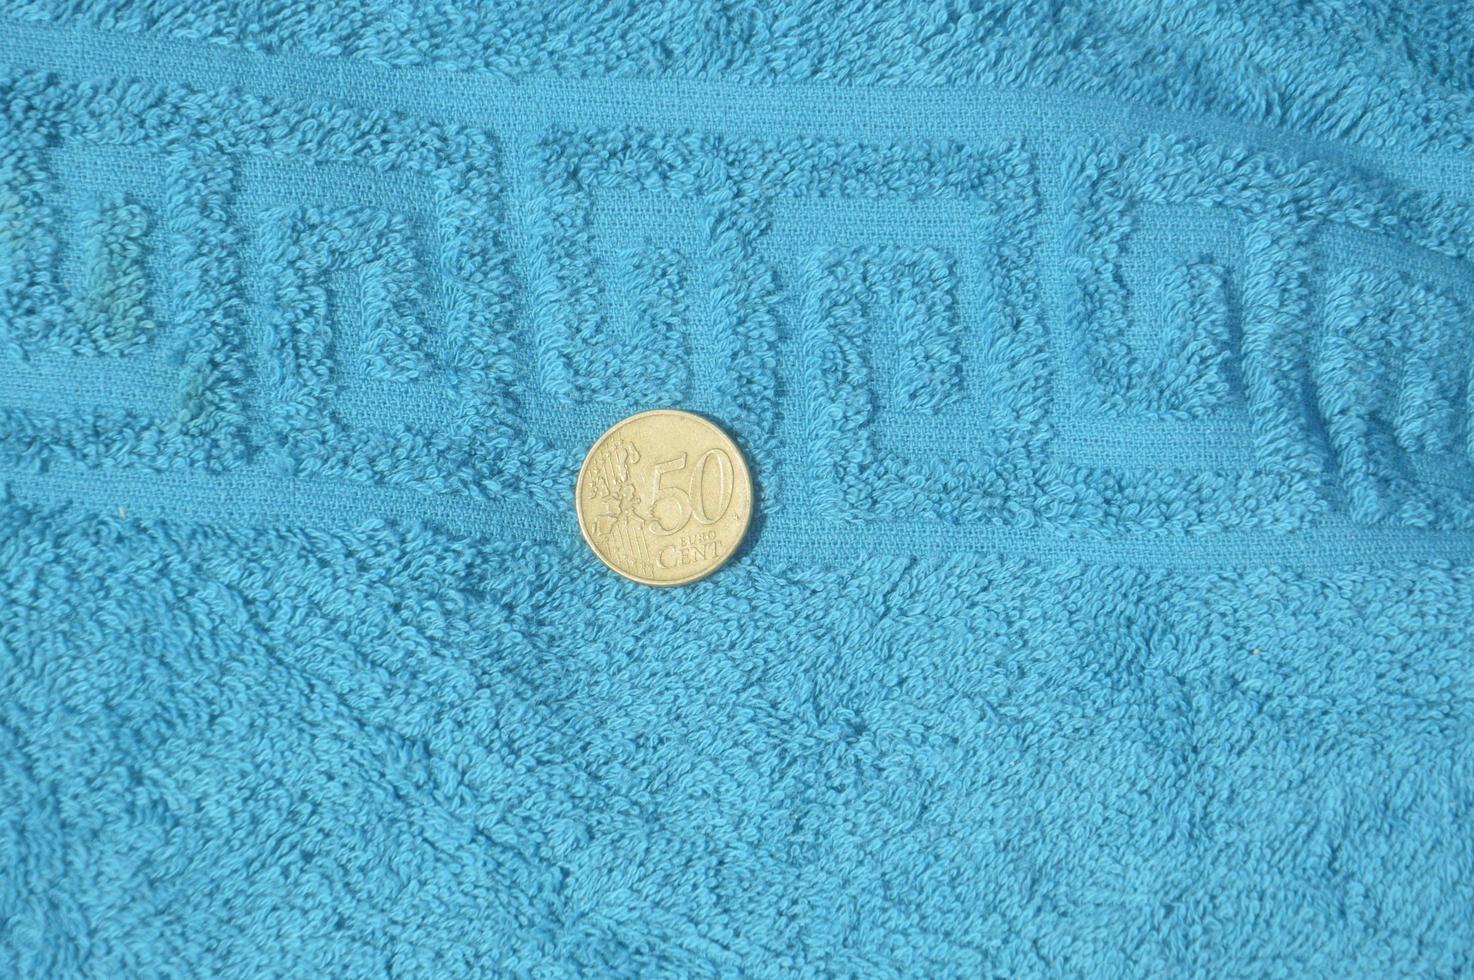 Pièce en dénomination de 50 centimes d'euro sur la côte égéenne sur l'île de Rhodes en Grèce photo